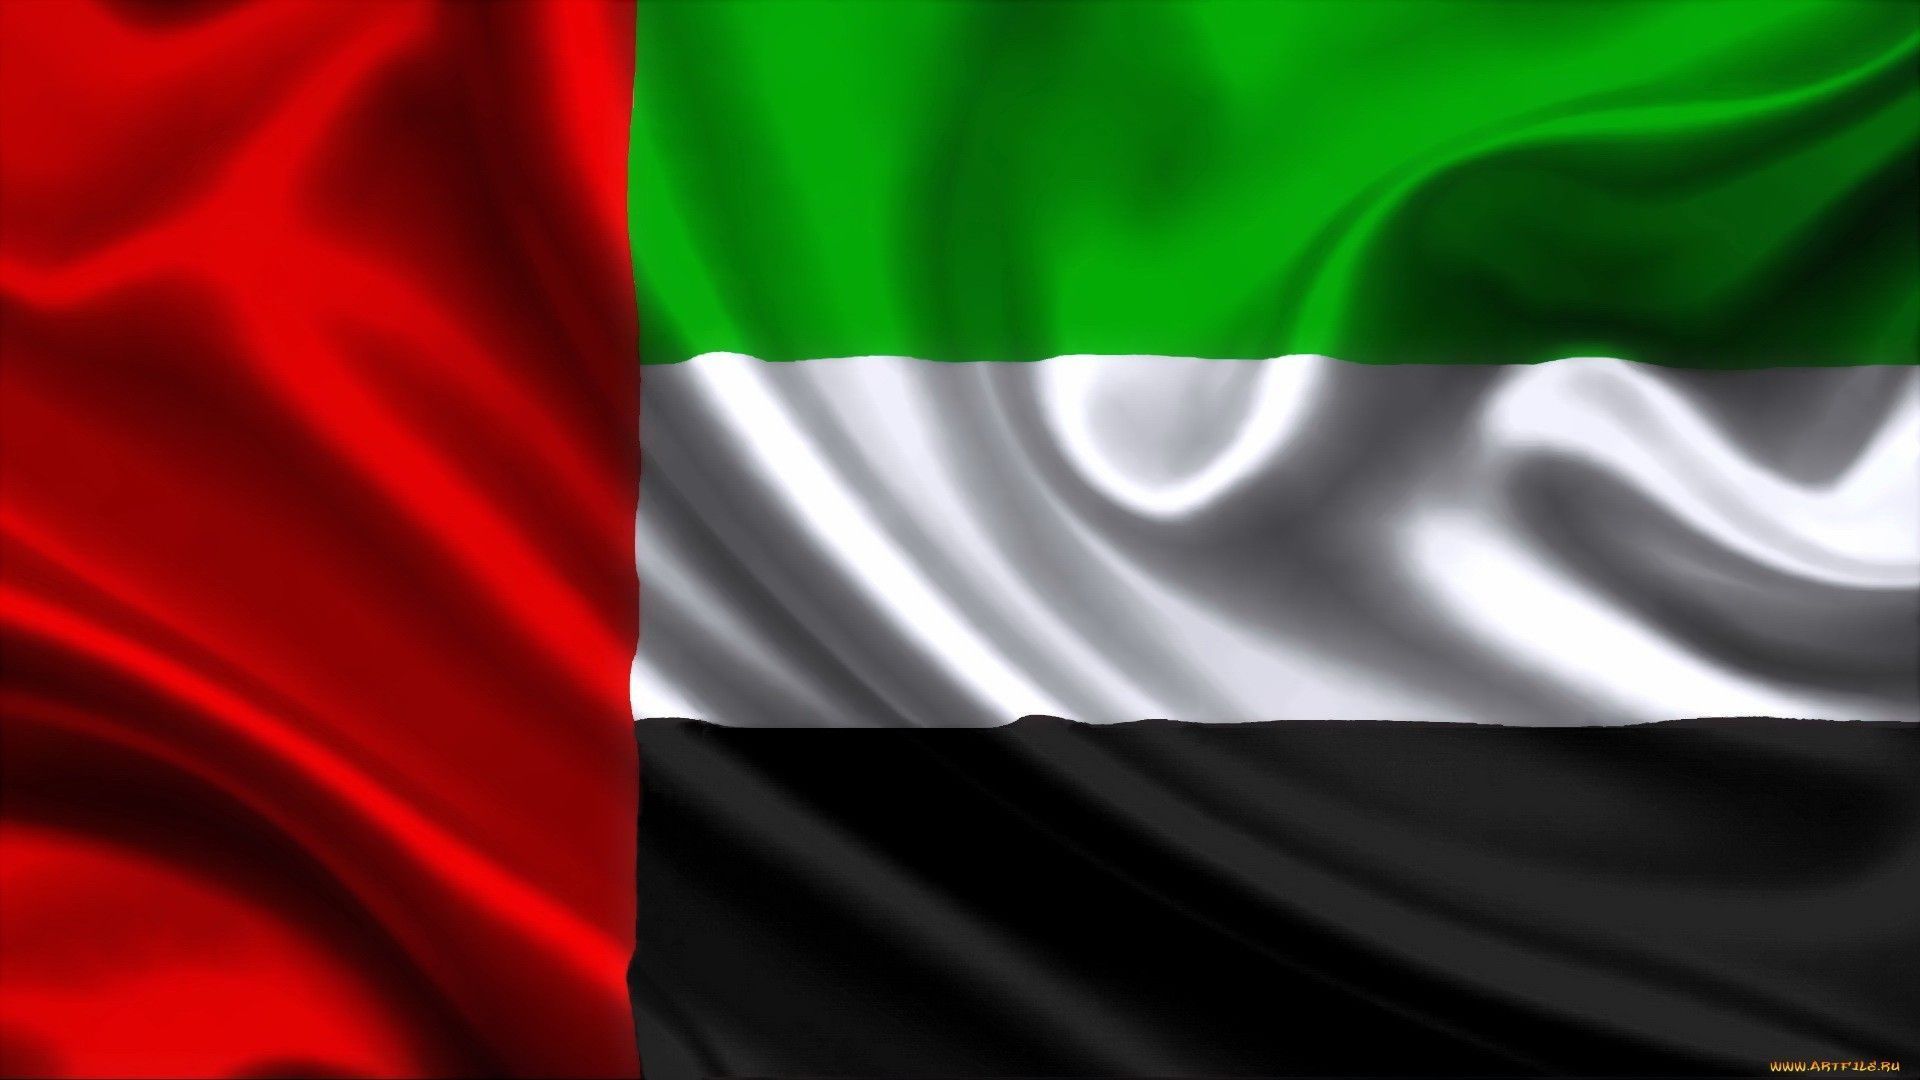 UAE Flag Wallpaper Free UAE Flag .wallpaperaccess.com